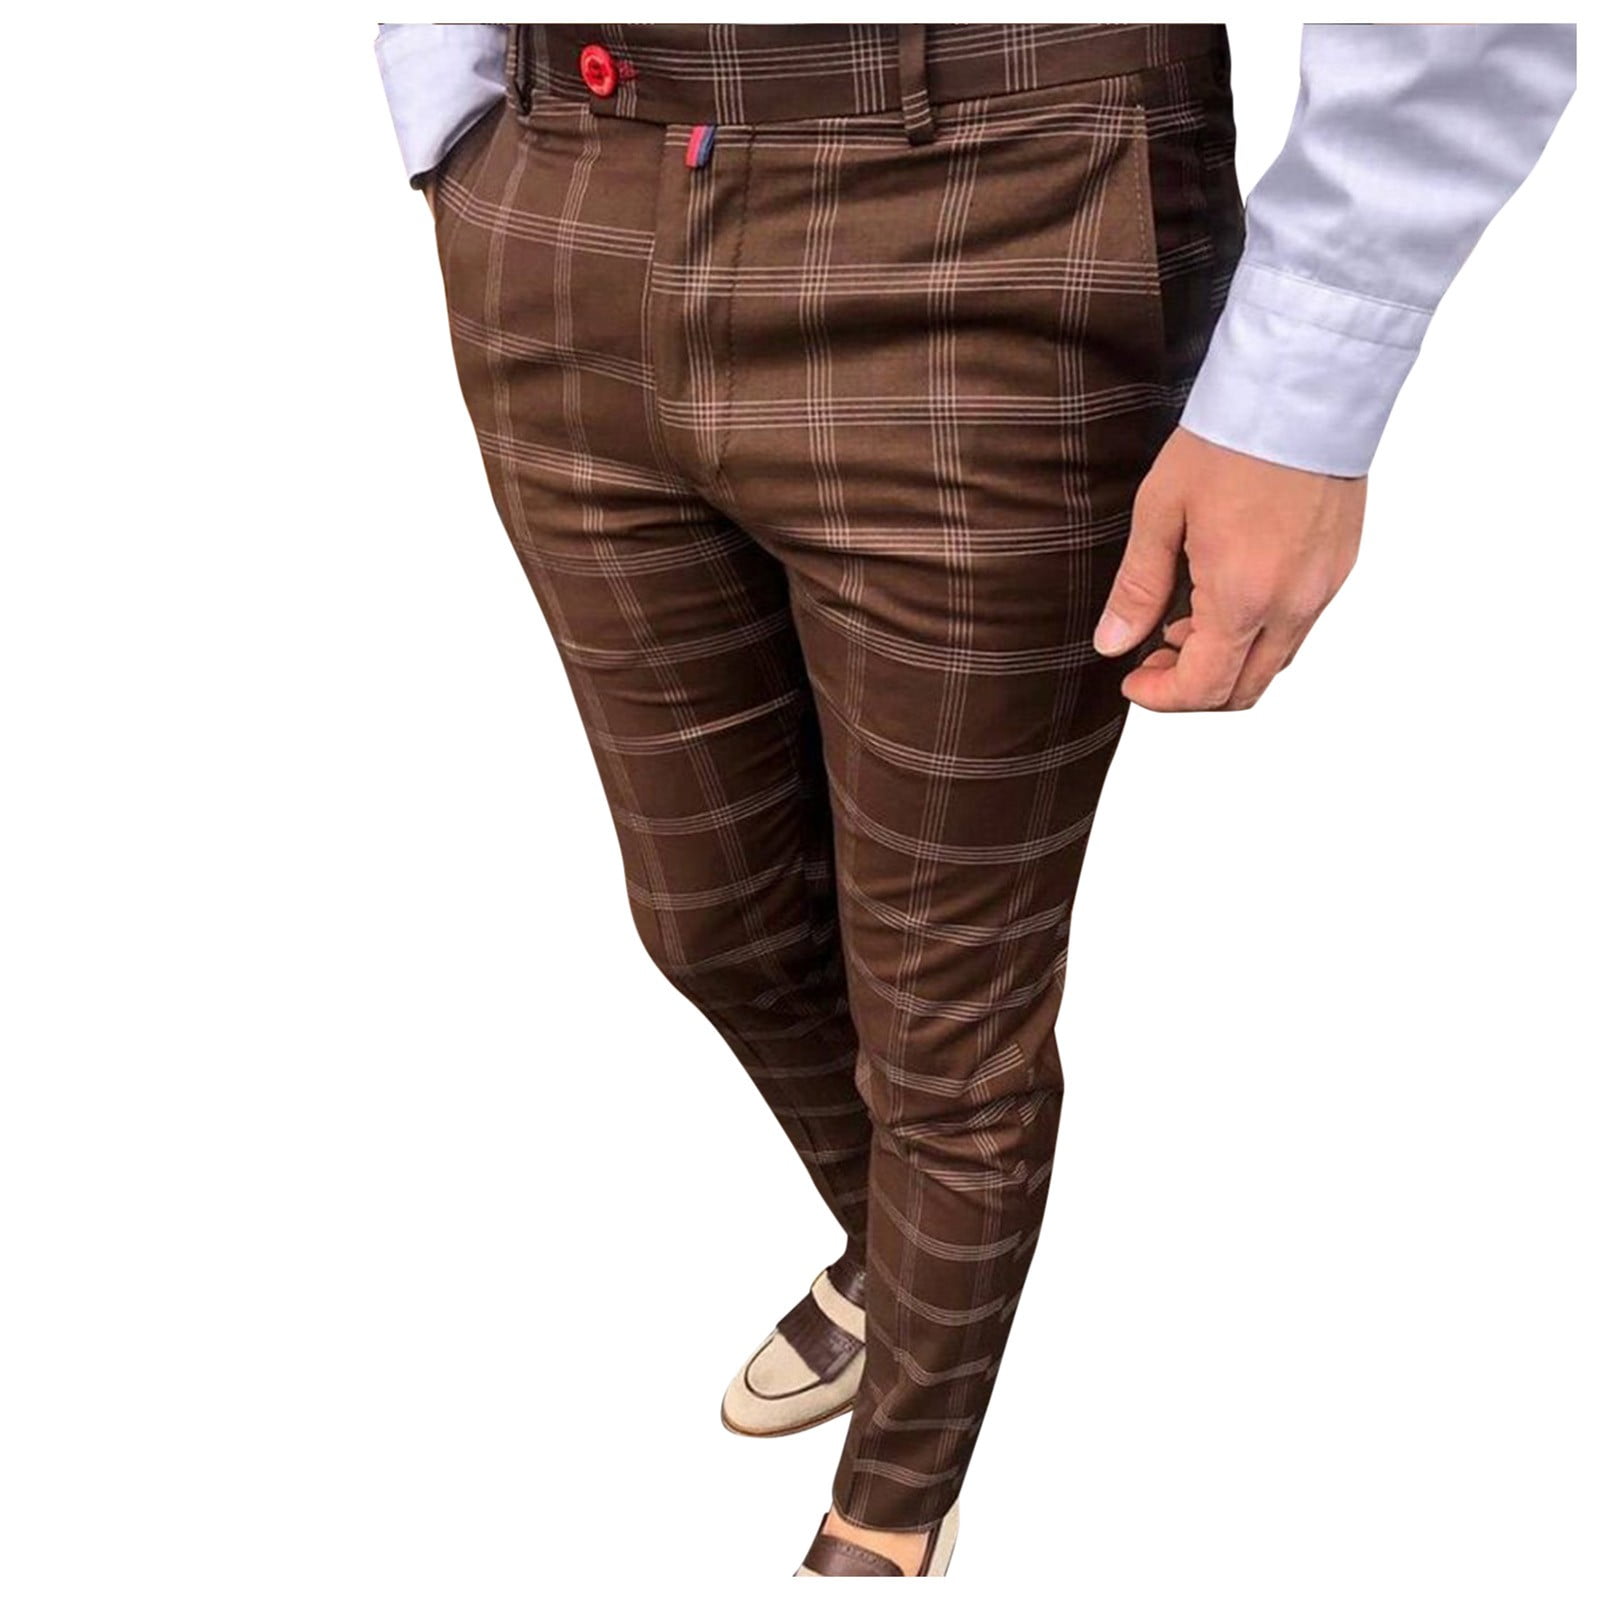 Outfmvch Joggers For Men Mens Jeans Men'S Casual Plaid Print Party Suit ...